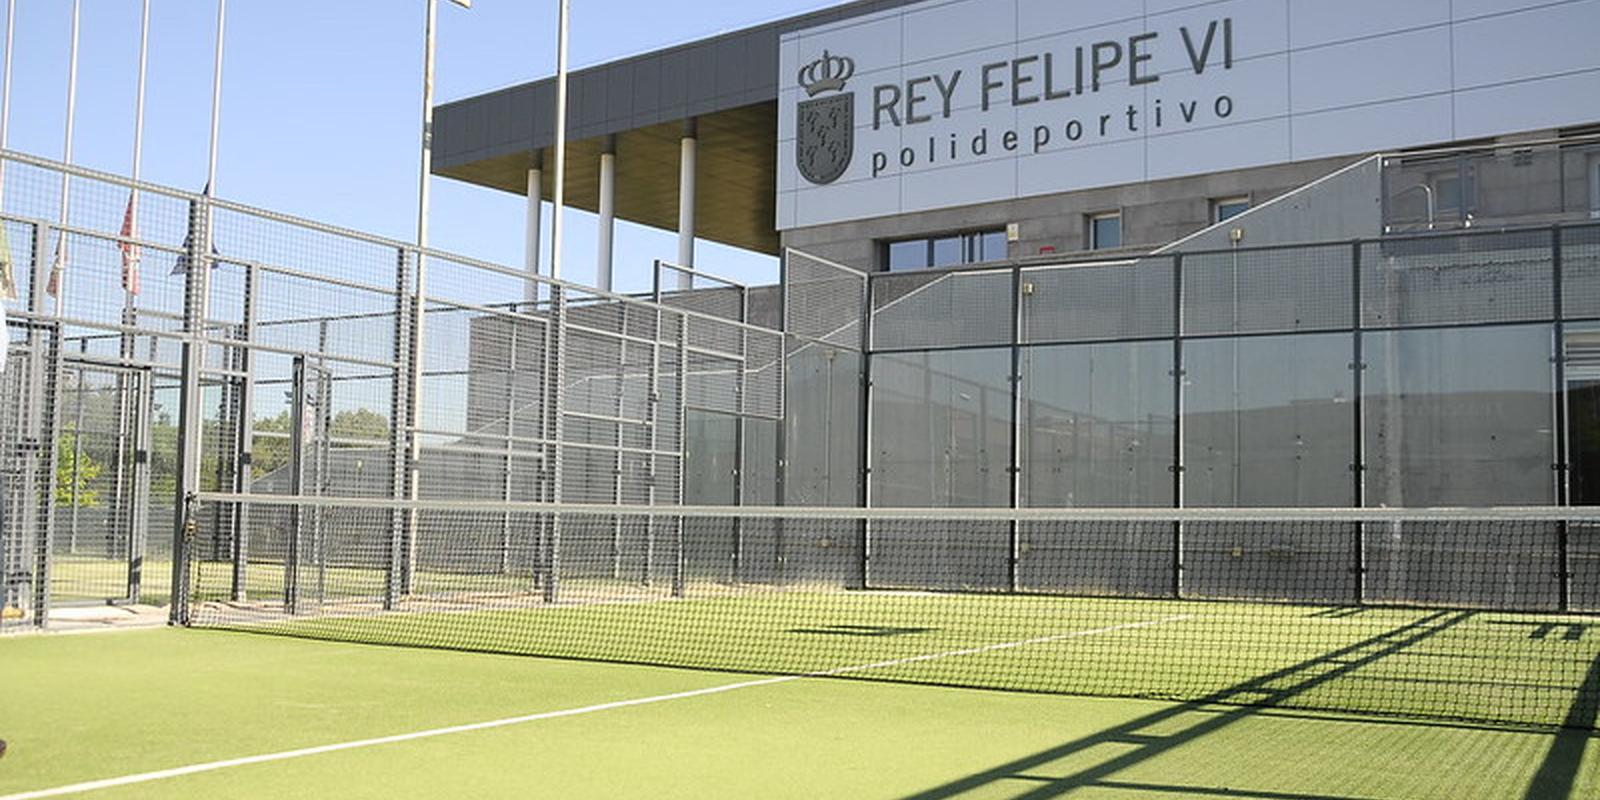 Ocho jugadores del Atlético de Madrid entrenaron el sábado en el polideportivo Rey Felipe VI de Boadilla por el temporal